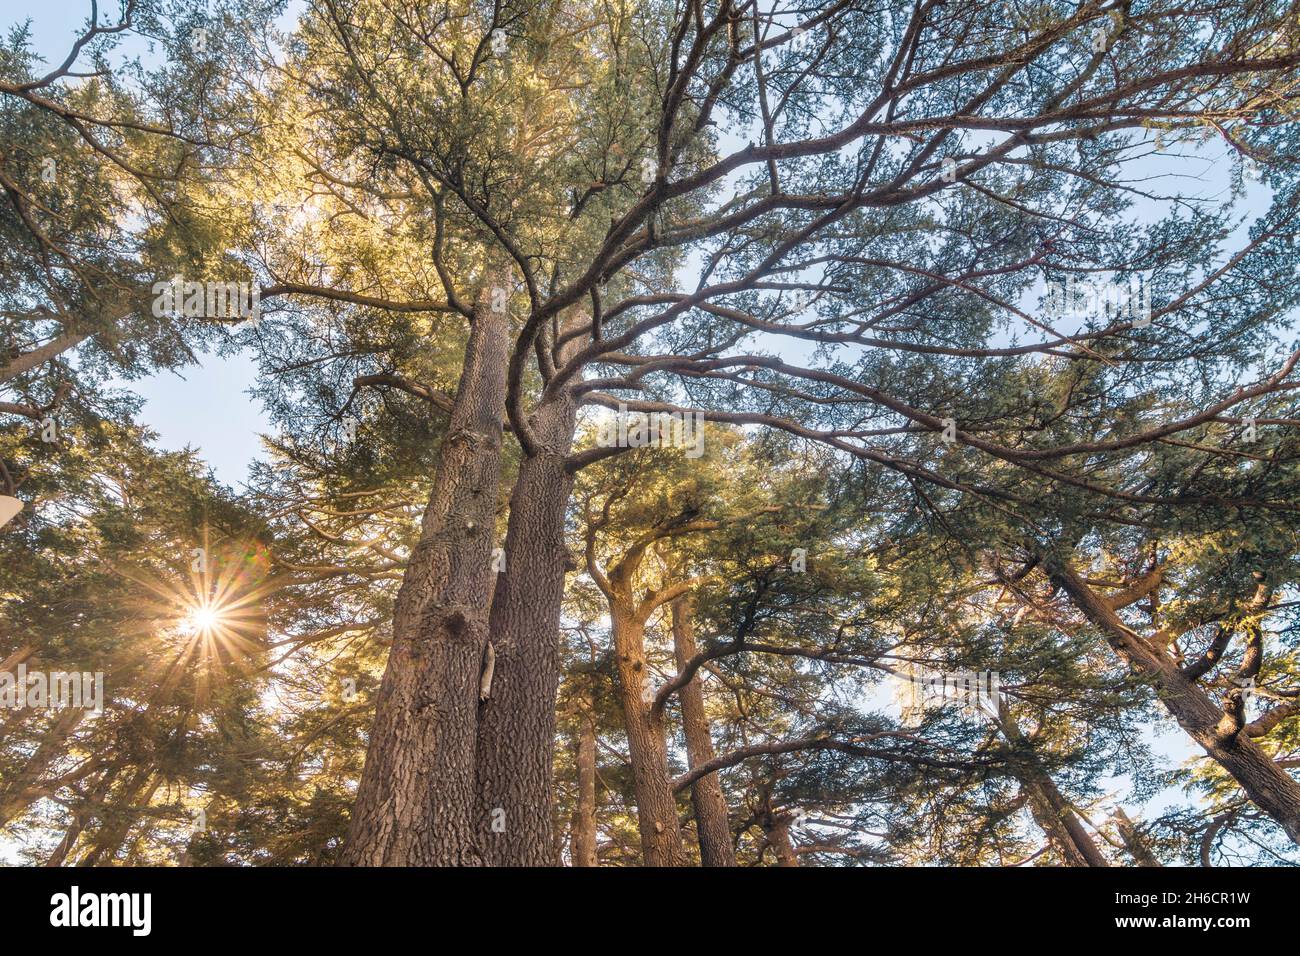 Vue de dessous des arbres de Cedrus libani dans la forêt des Cedars de Dieu avec des rayons du soleil, Arz, Bsharri, Liban Banque D'Images